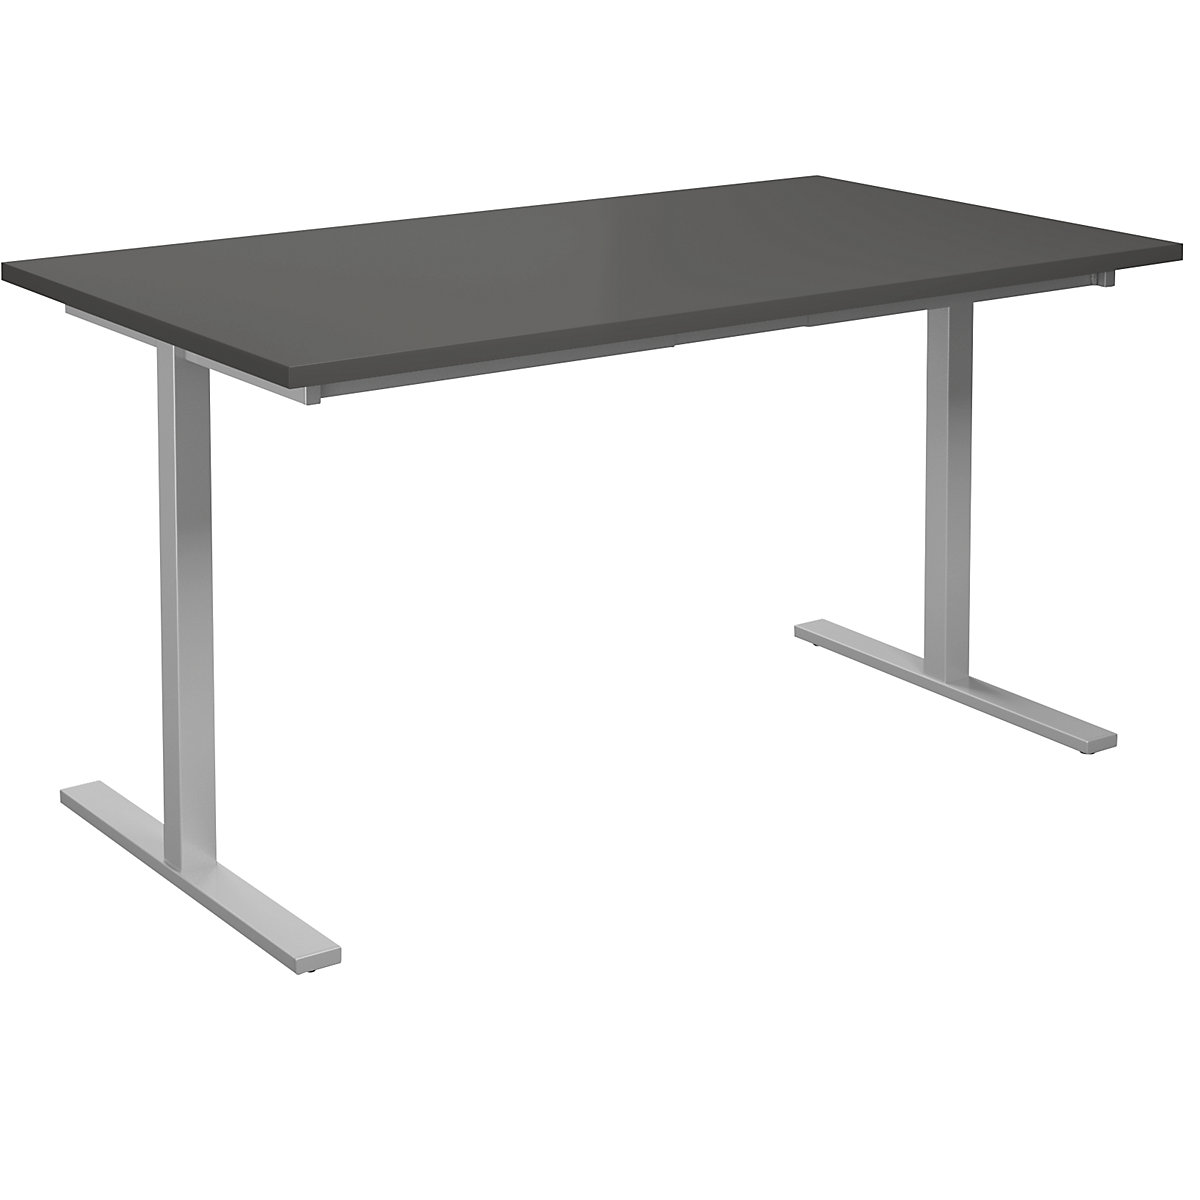 Multifunctionele tafel DUO-T, recht blad